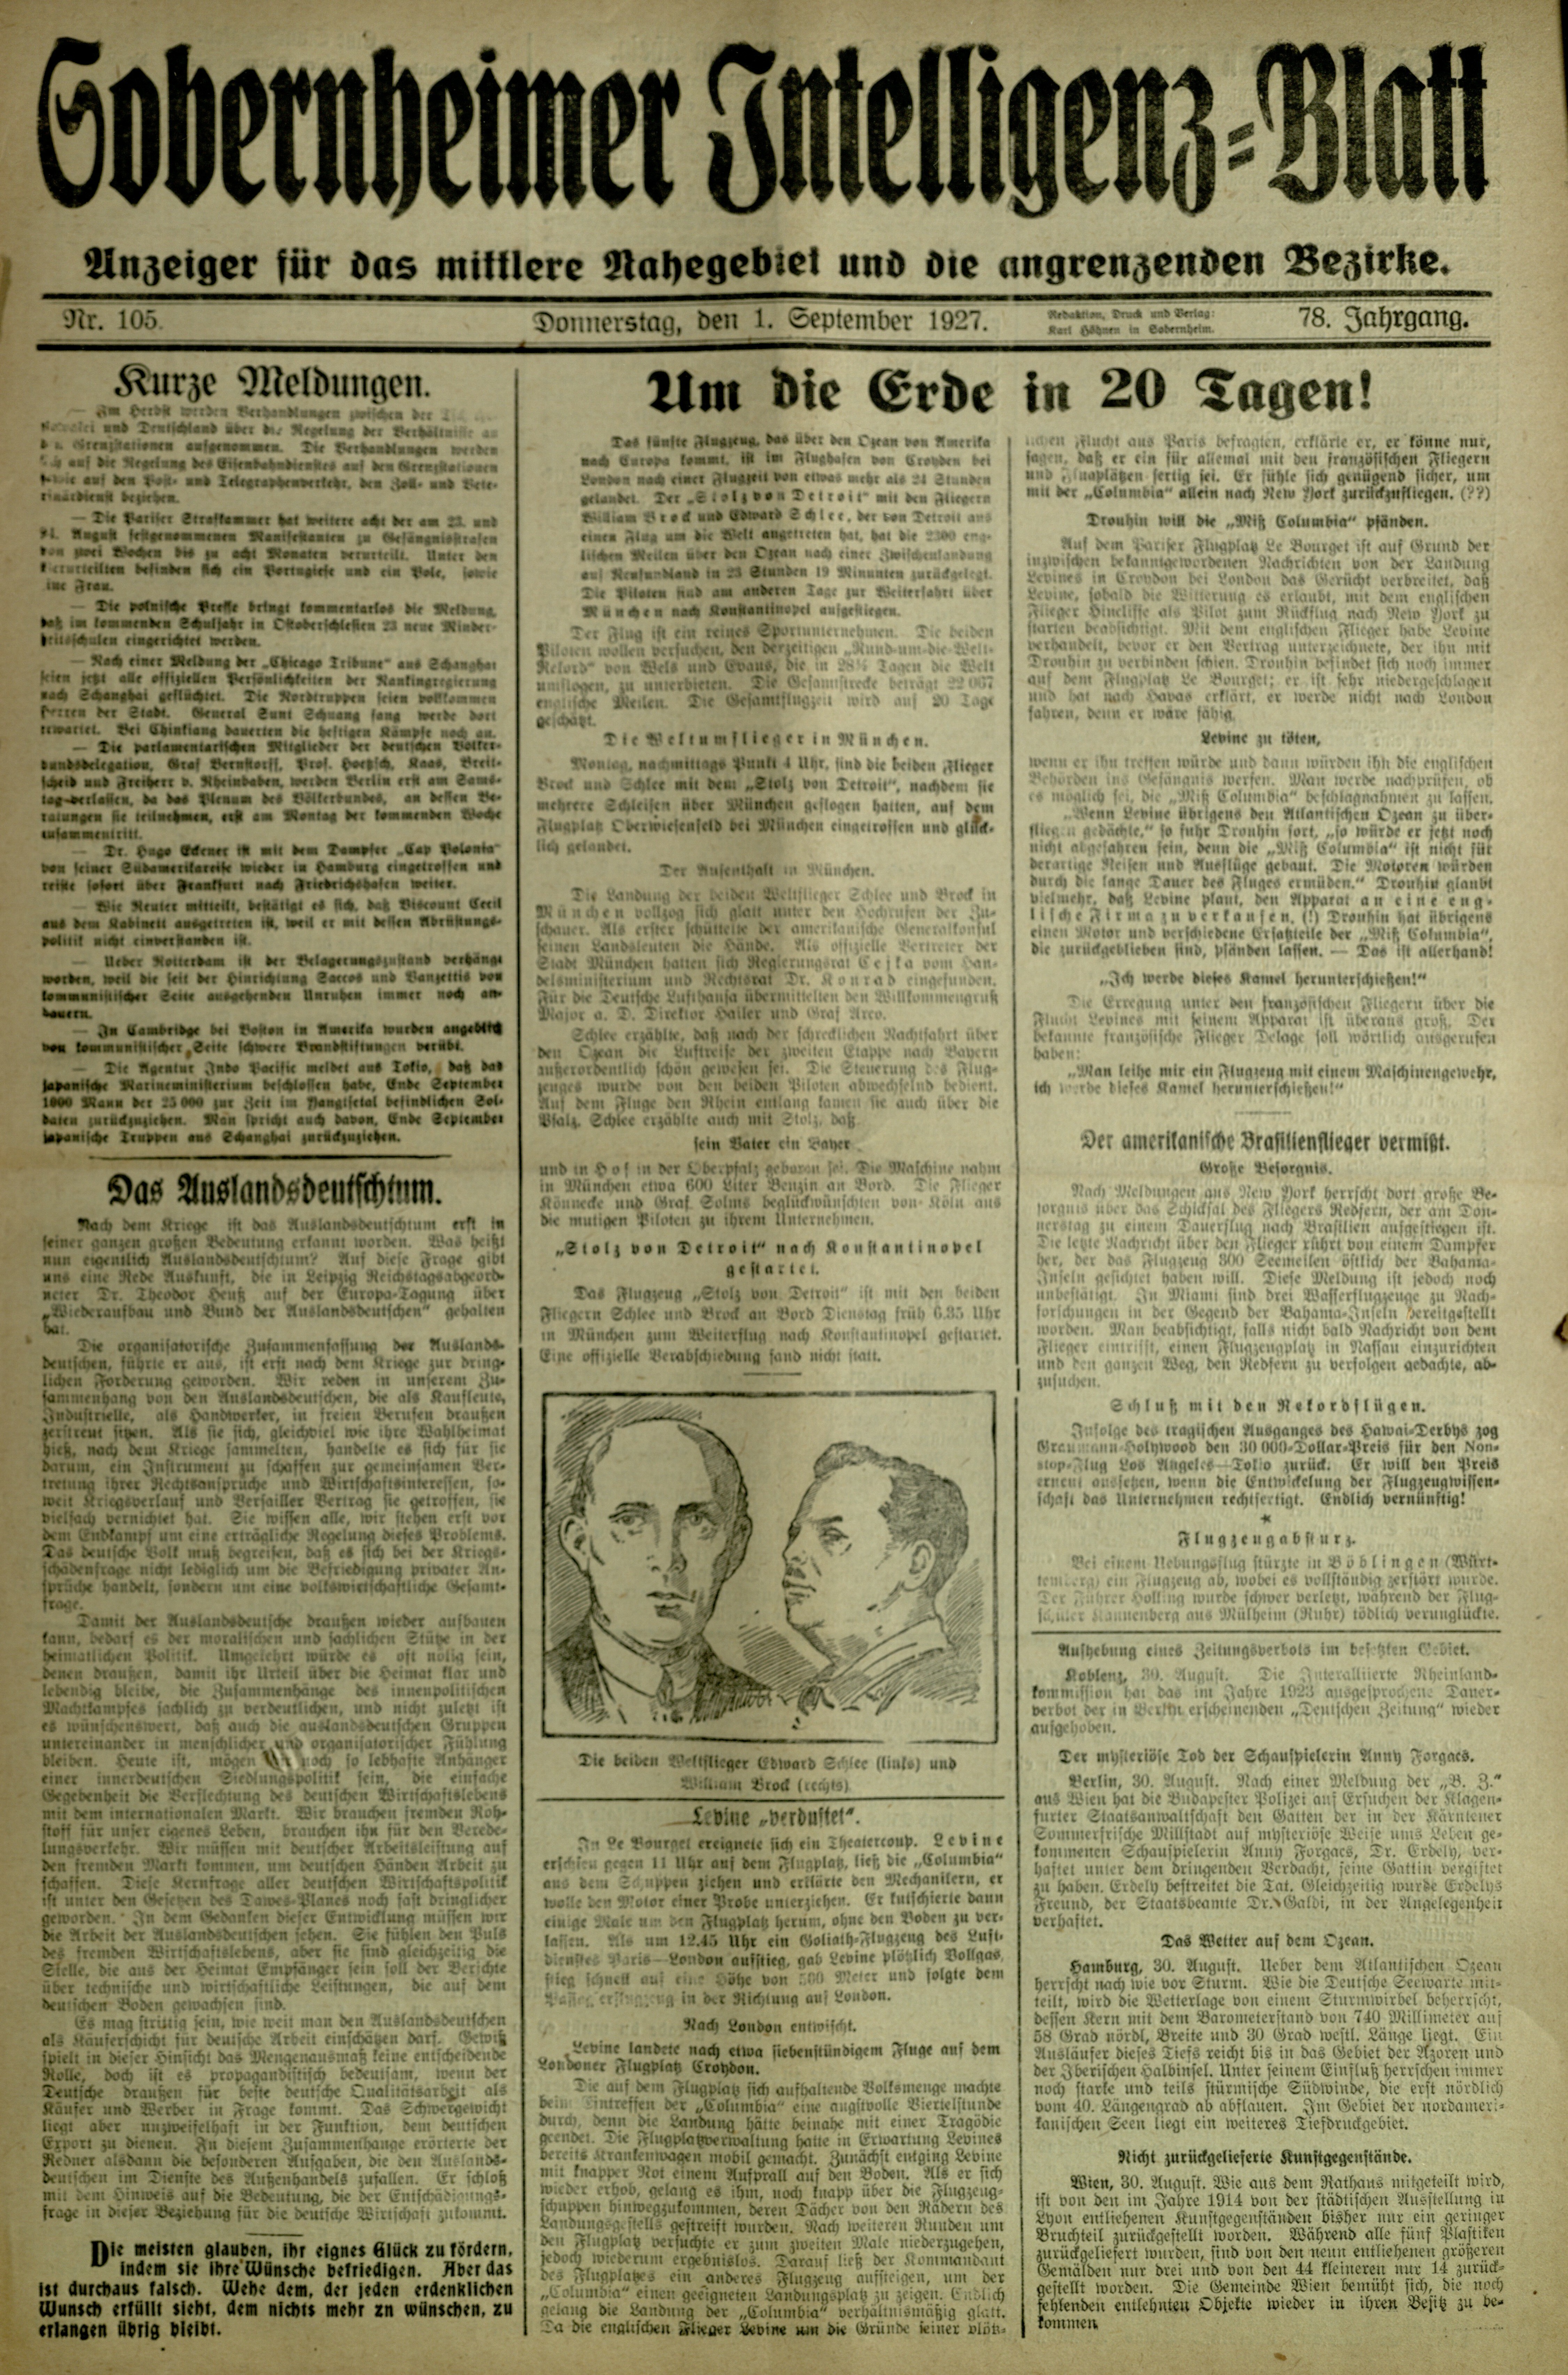 Zeitung: Sobernheimer Intelligenzblatt; September 1927, Jg. 78 Nr. 105 (Heimatmuseum Bad Sobernheim CC BY-NC-SA)